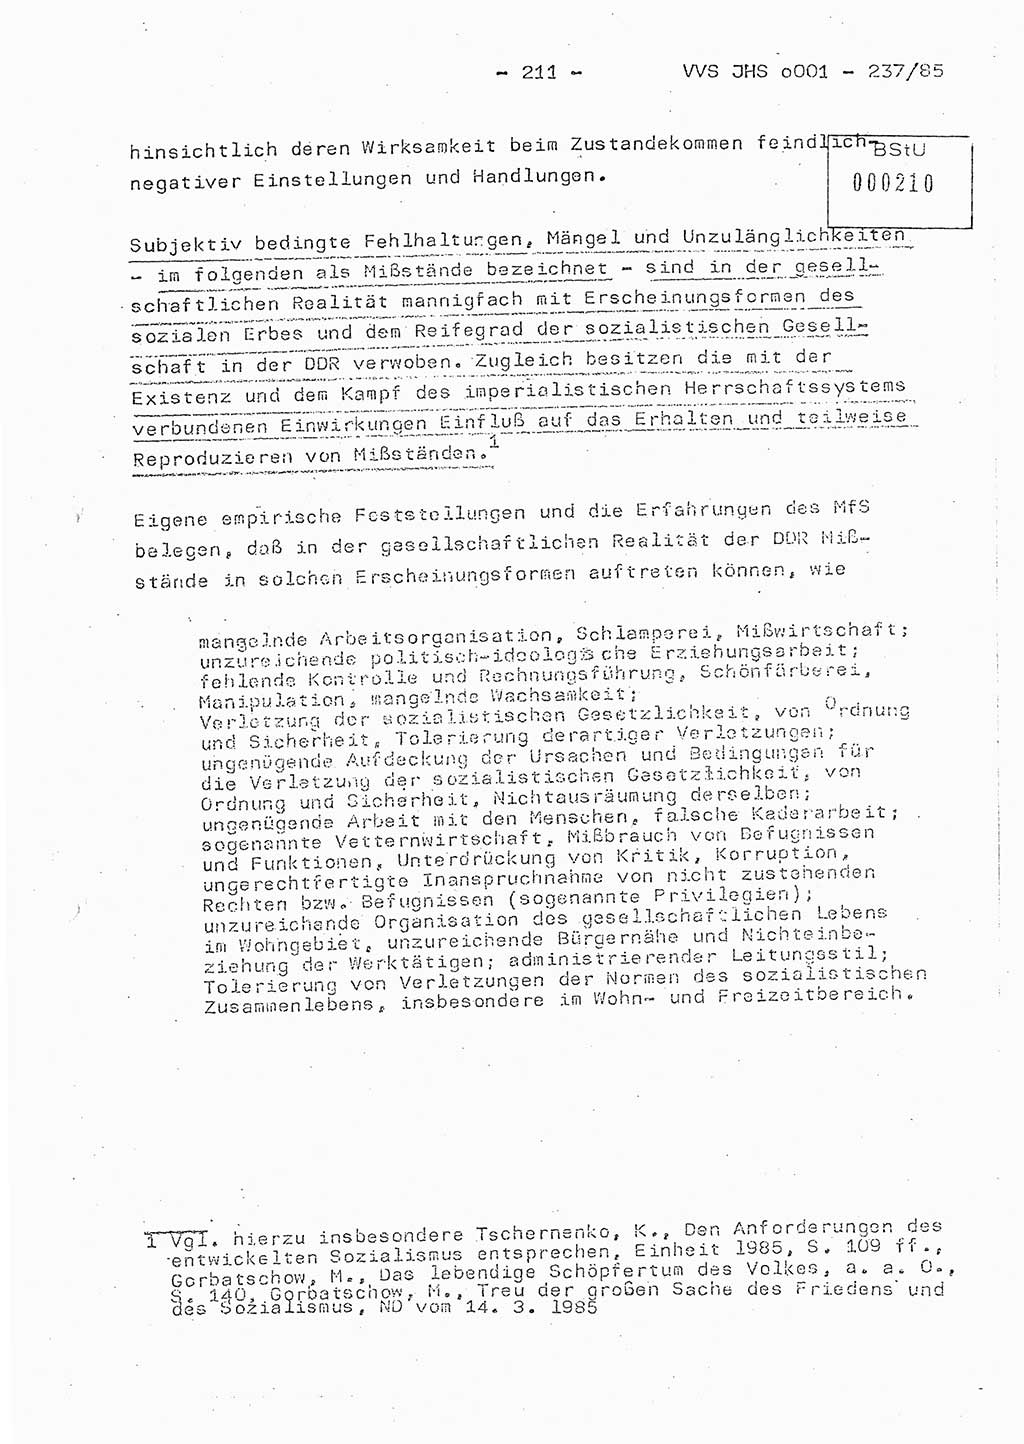 Dissertation Oberstleutnant Peter Jakulski (JHS), Oberstleutnat Christian Rudolph (HA Ⅸ), Major Horst Böttger (ZMD), Major Wolfgang Grüneberg (JHS), Major Albert Meutsch (JHS), Ministerium für Staatssicherheit (MfS) [Deutsche Demokratische Republik (DDR)], Juristische Hochschule (JHS), Vertrauliche Verschlußsache (VVS) o001-237/85, Potsdam 1985, Seite 211 (Diss. MfS DDR JHS VVS o001-237/85 1985, S. 211)